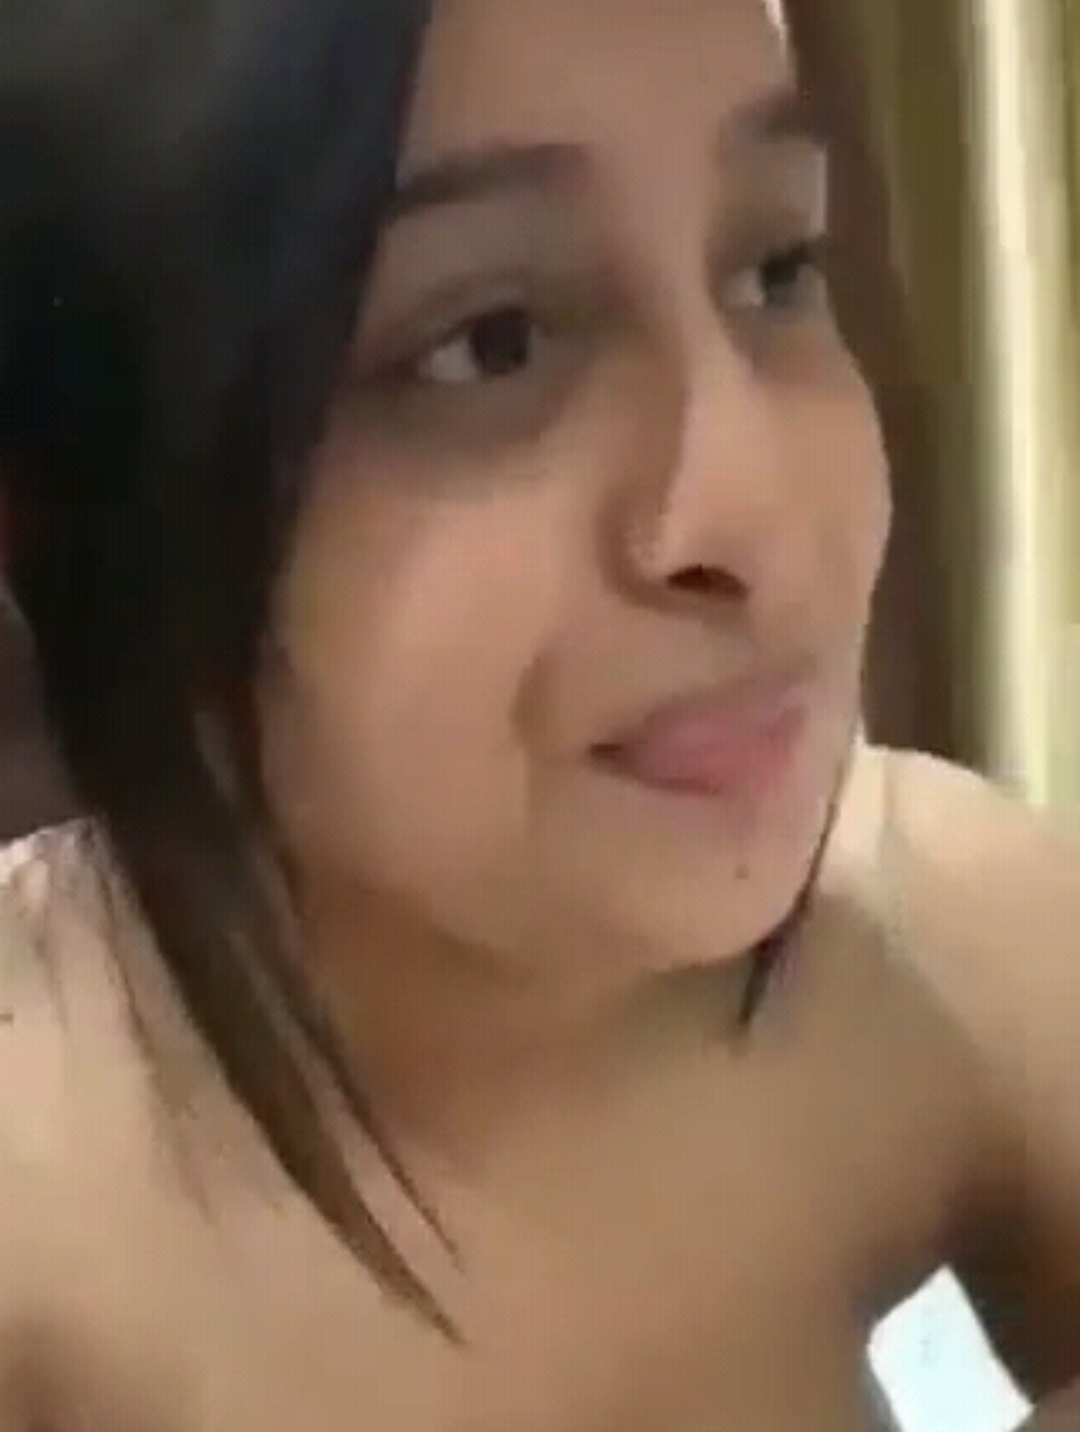 Bangali girl on hotel